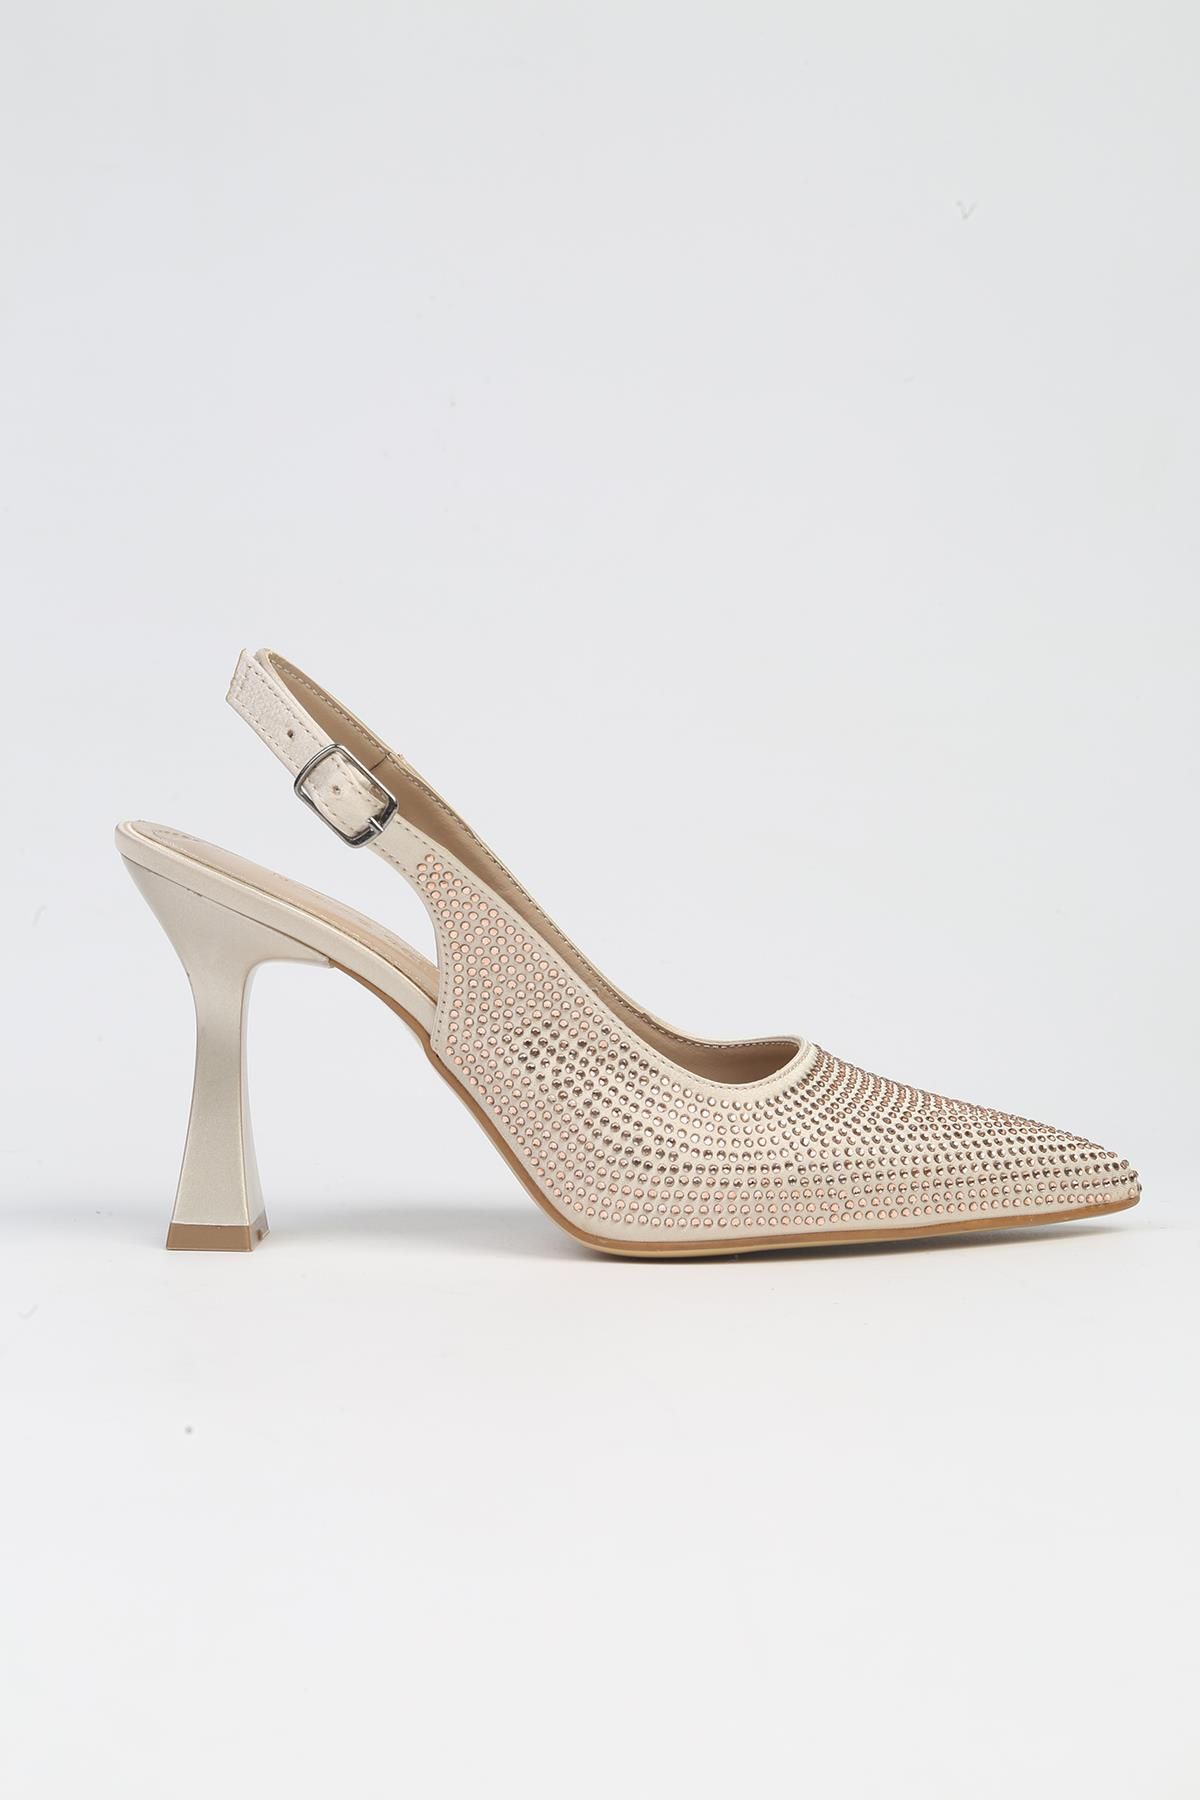 Pierre Cardin ® | PC-53002- 3691 Bej-Kadın Topuklu Ayakkabı